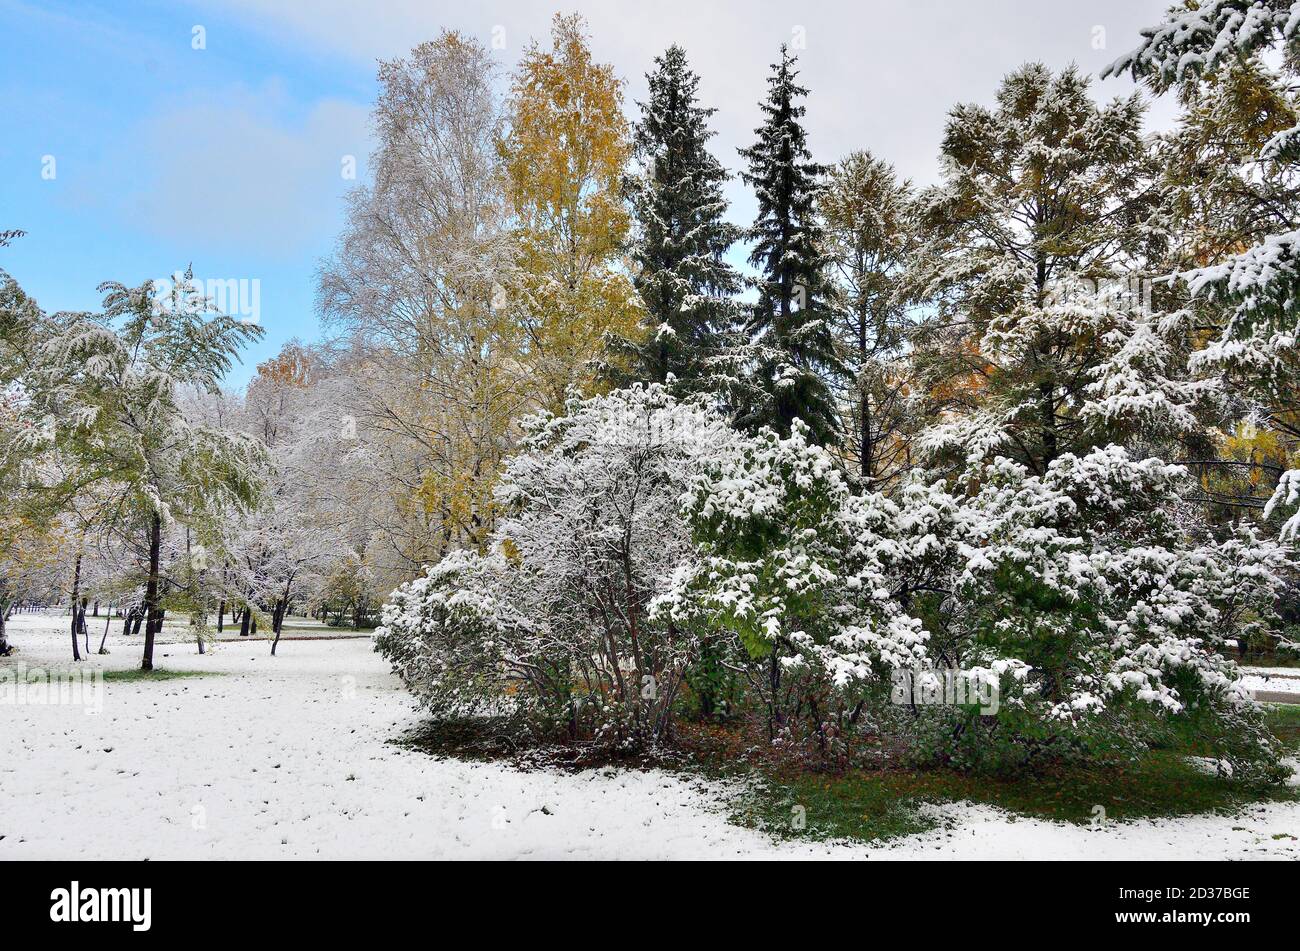 Première chute de neige dans le parc de la ville d'automne coloré. Blanc neige moelleuse couverte de feuillage d'arbres et de buissons dorés, rouges, verts, aiguilles de sapins. Changement de saison Banque D'Images